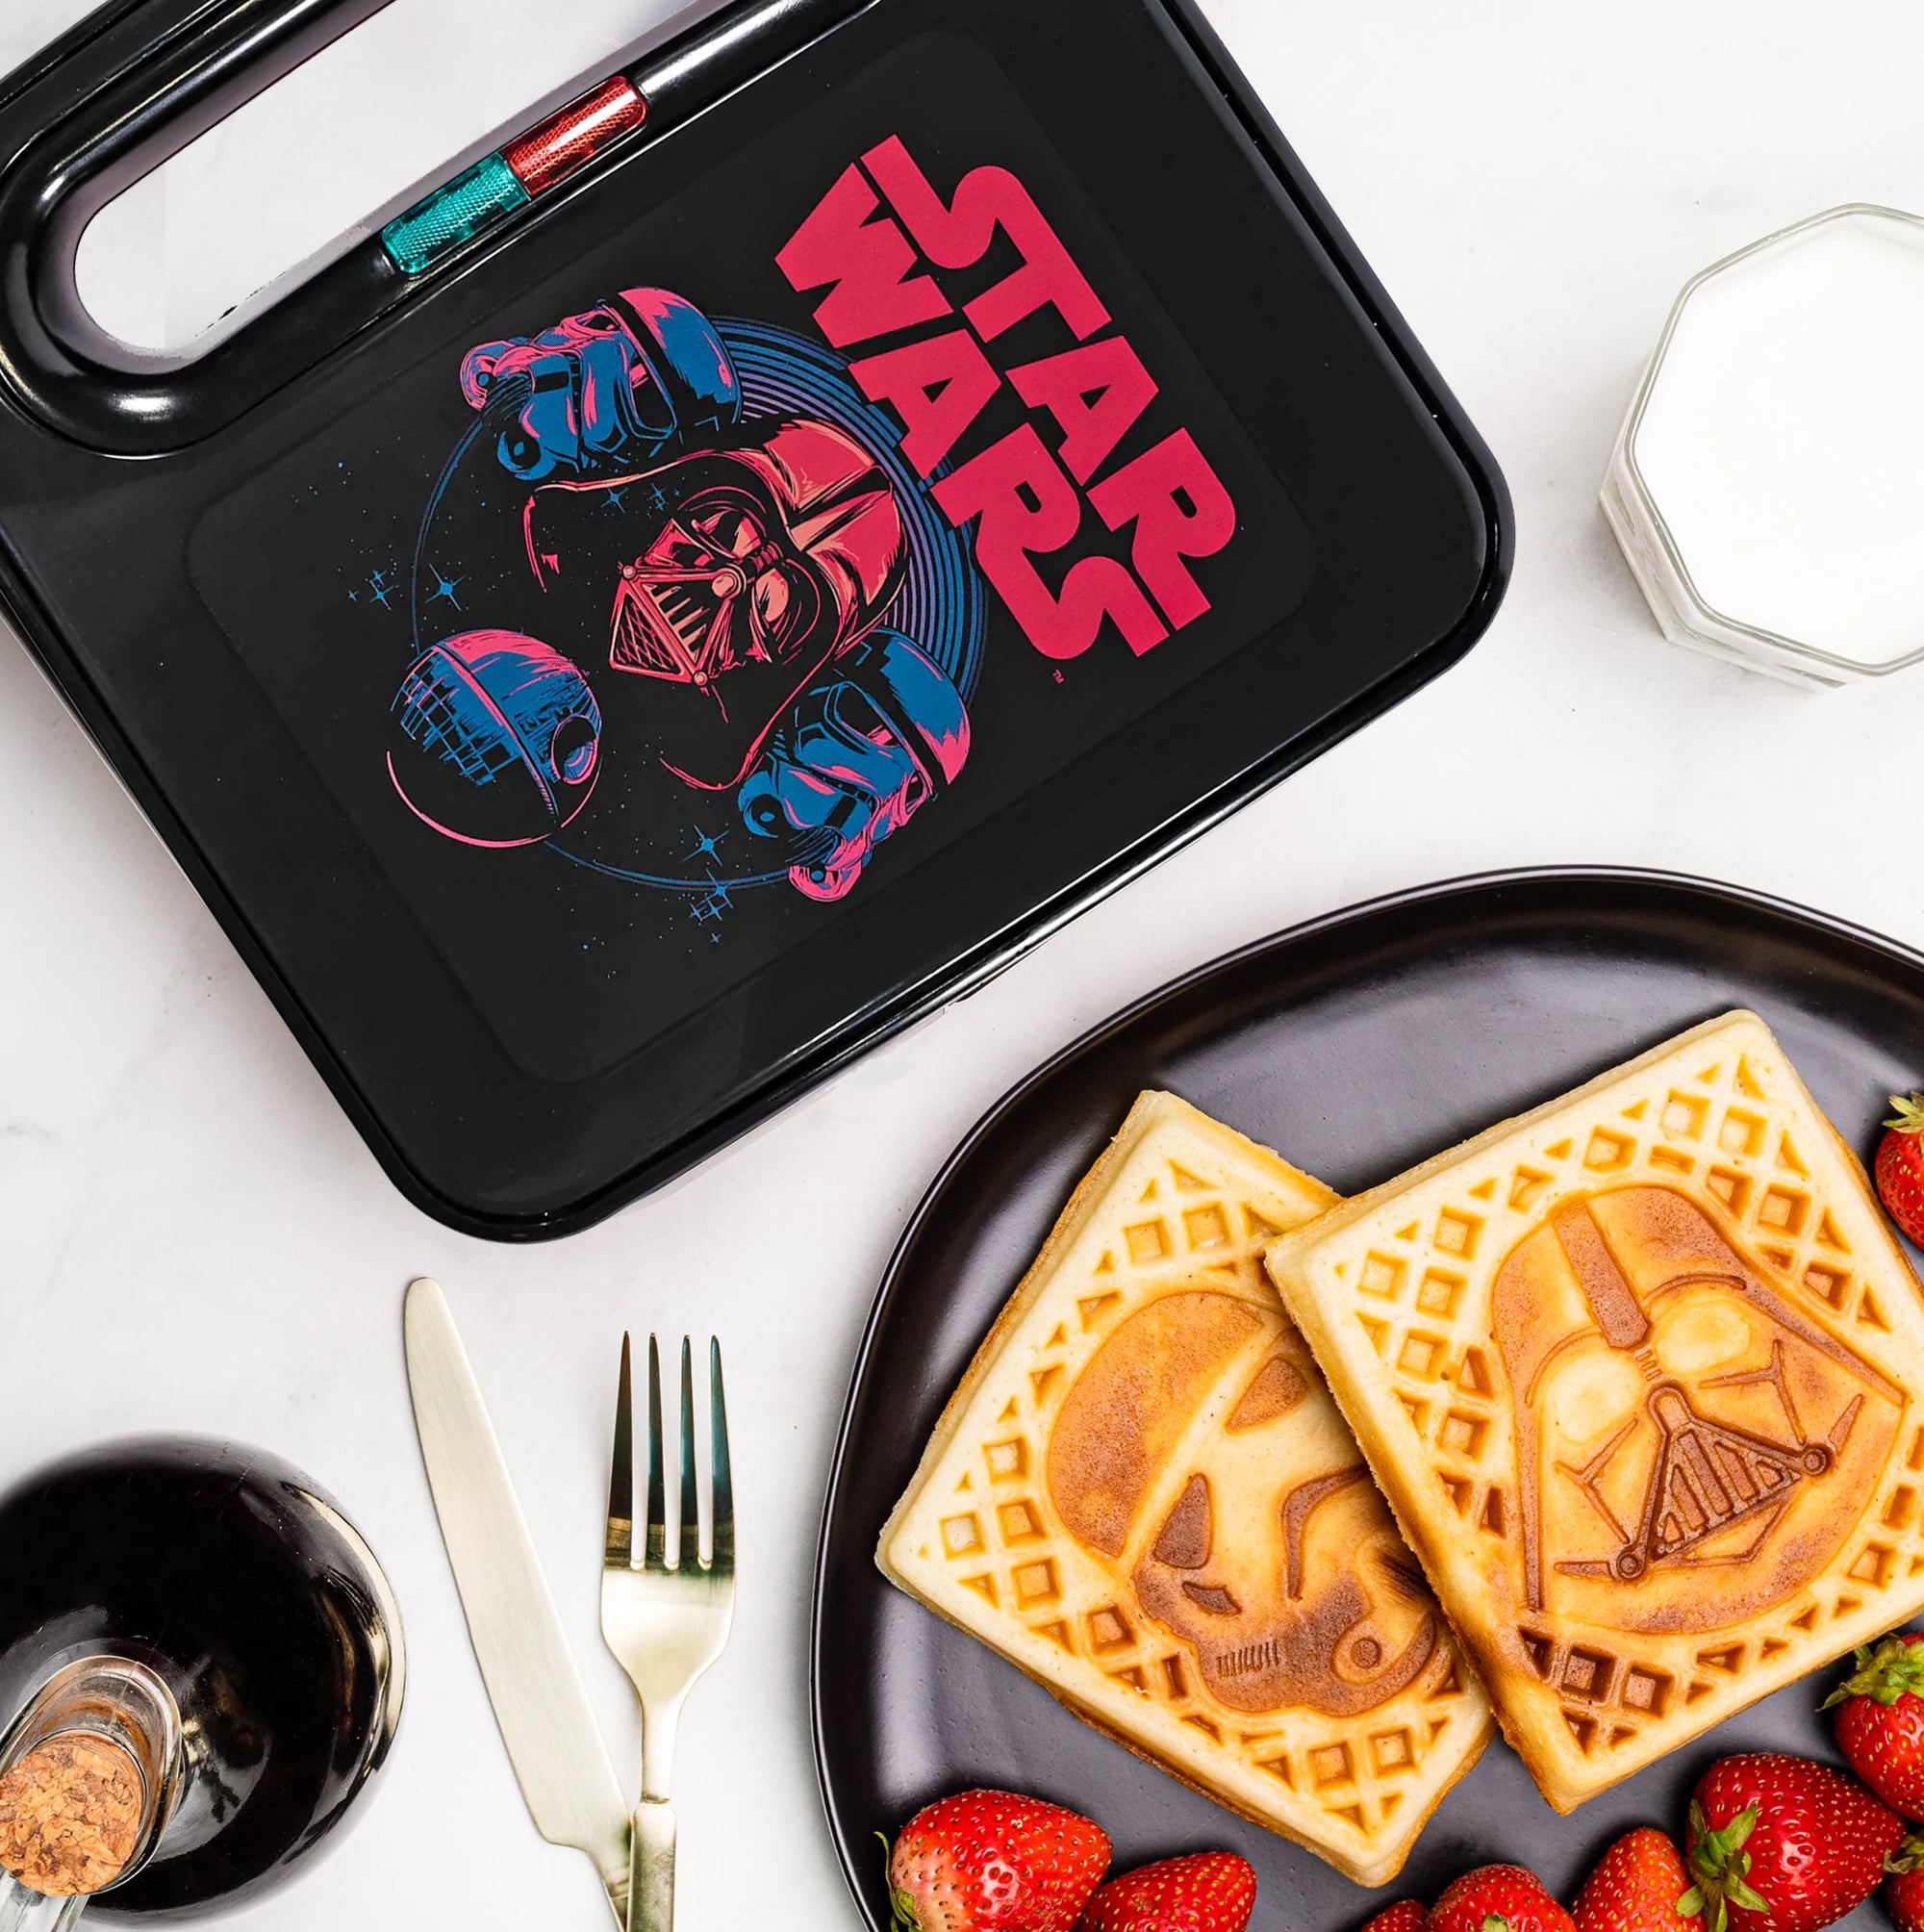 Star Wars Darth Vader & Stormtrooper Coffee Maker Set - Uncanny Brands